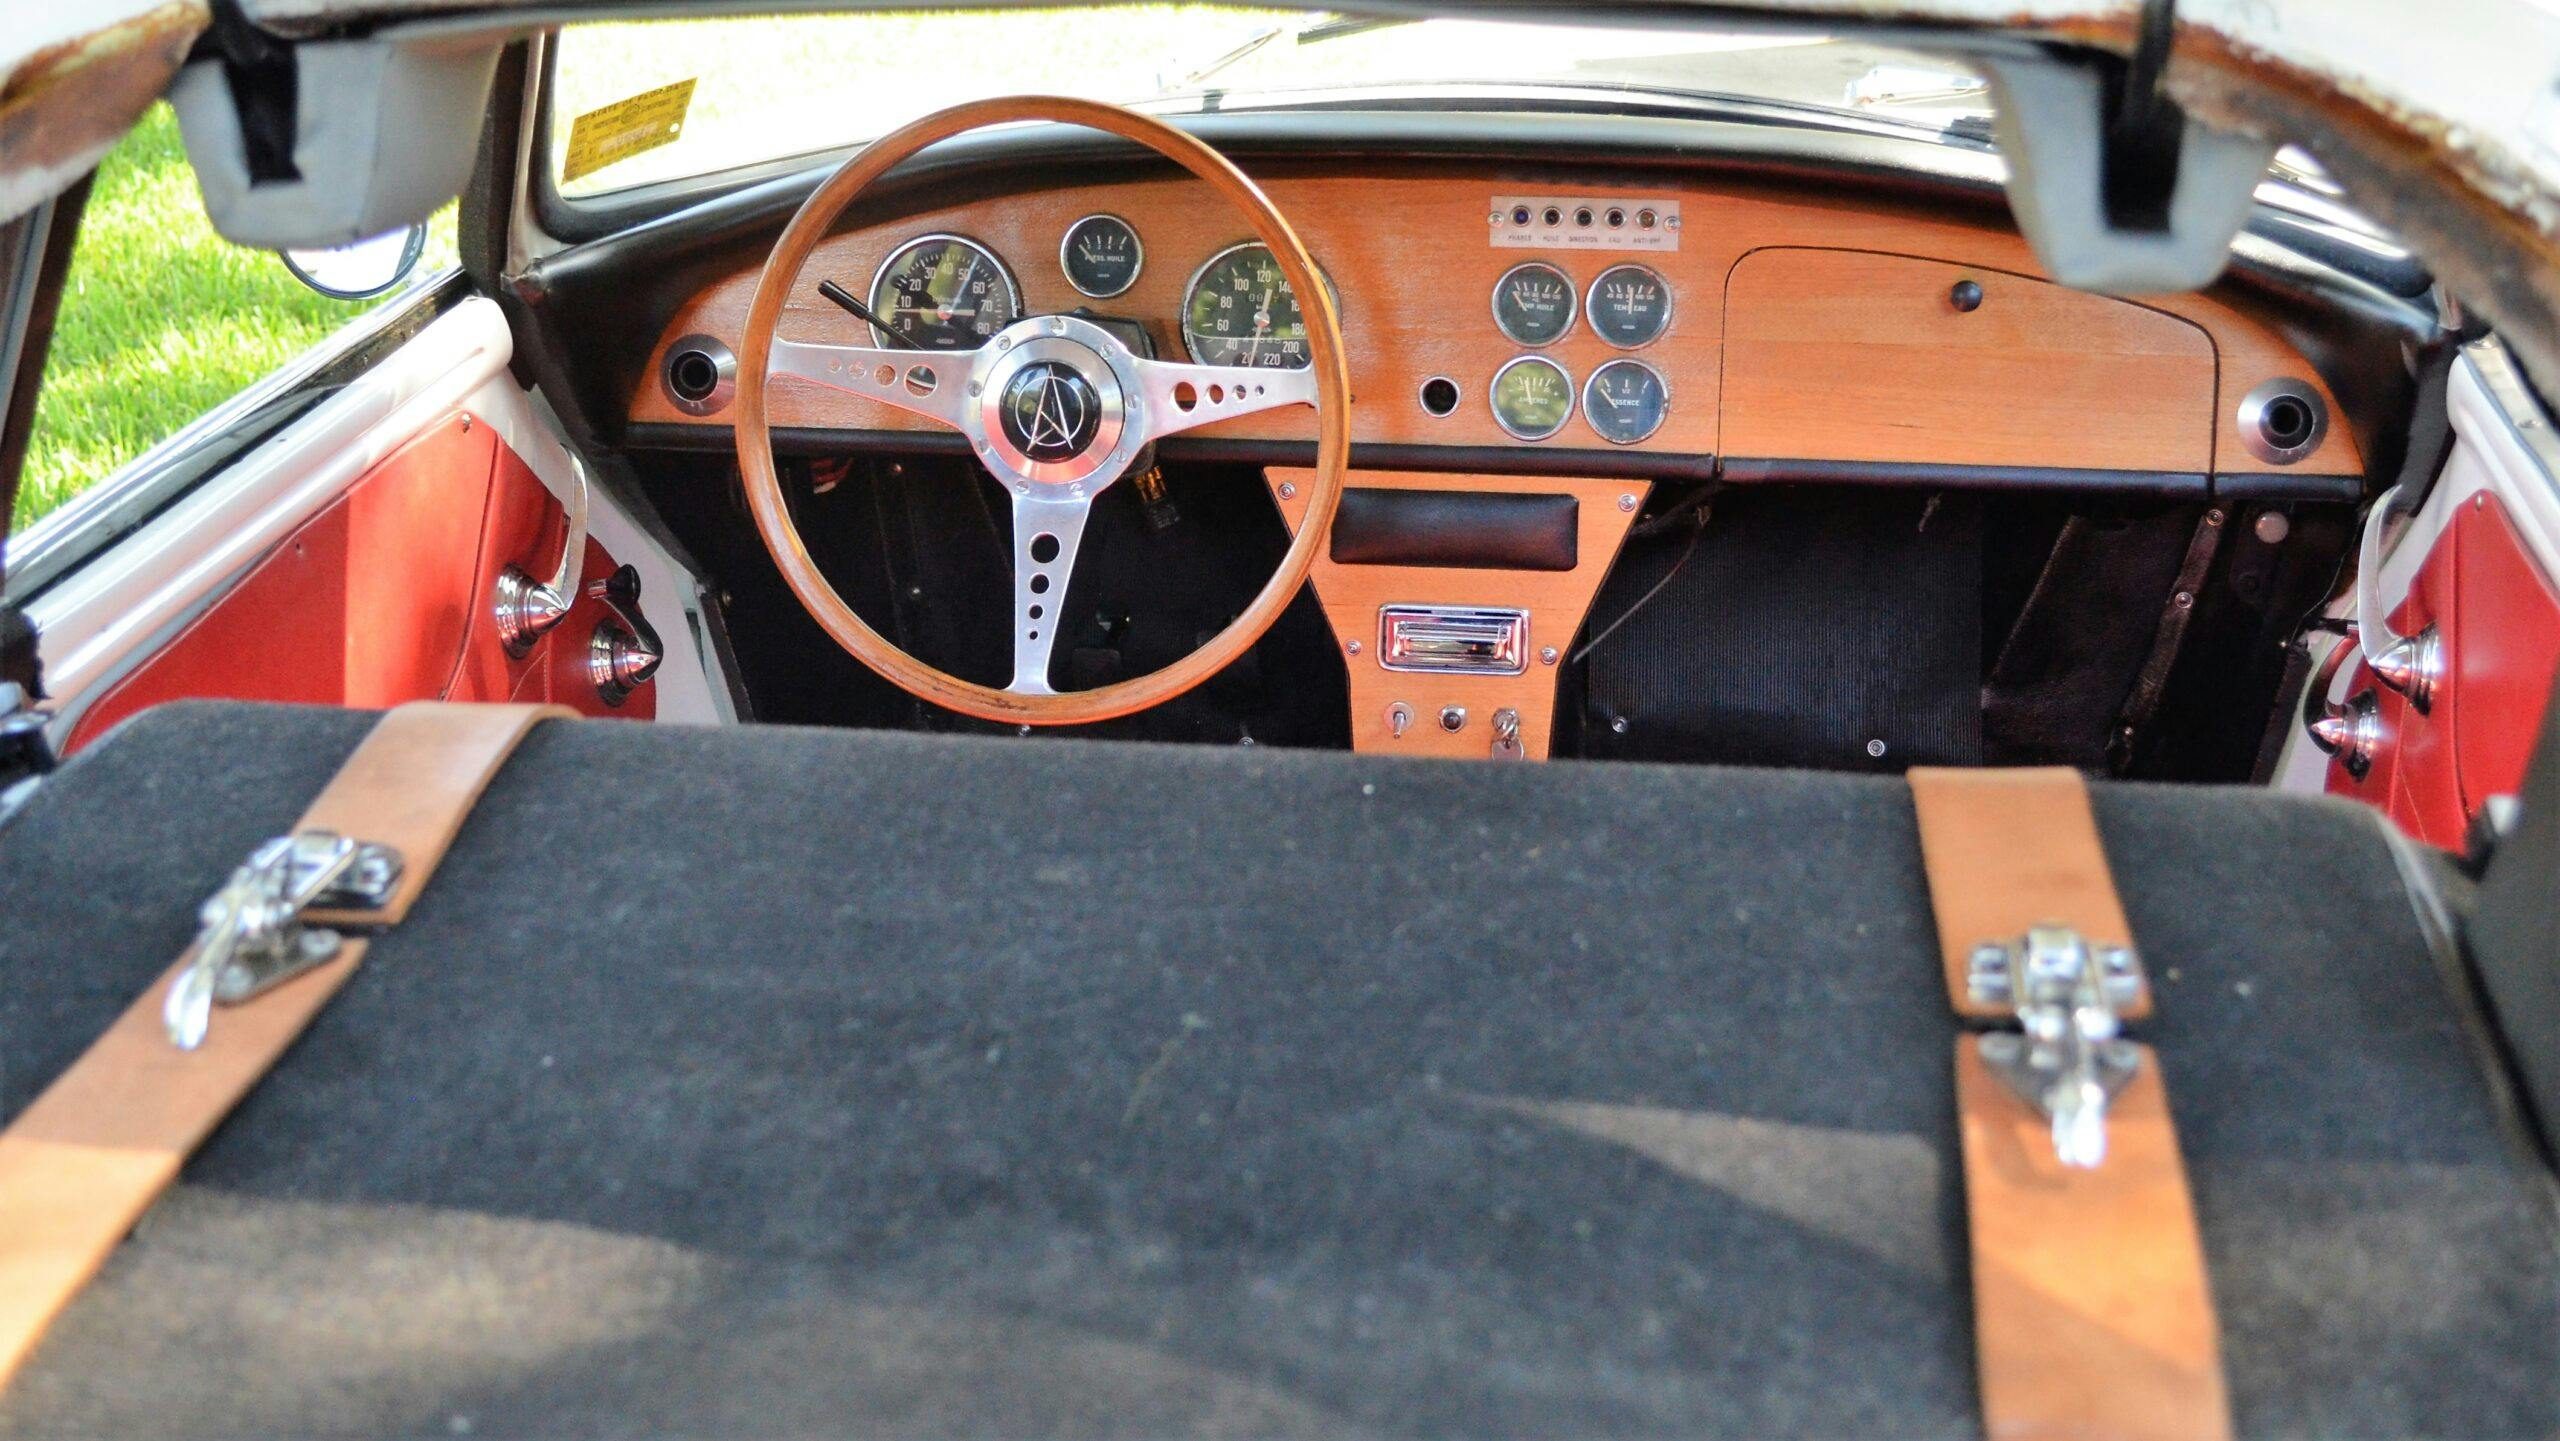 1966 Matra-Bonnet DJet 5S interior